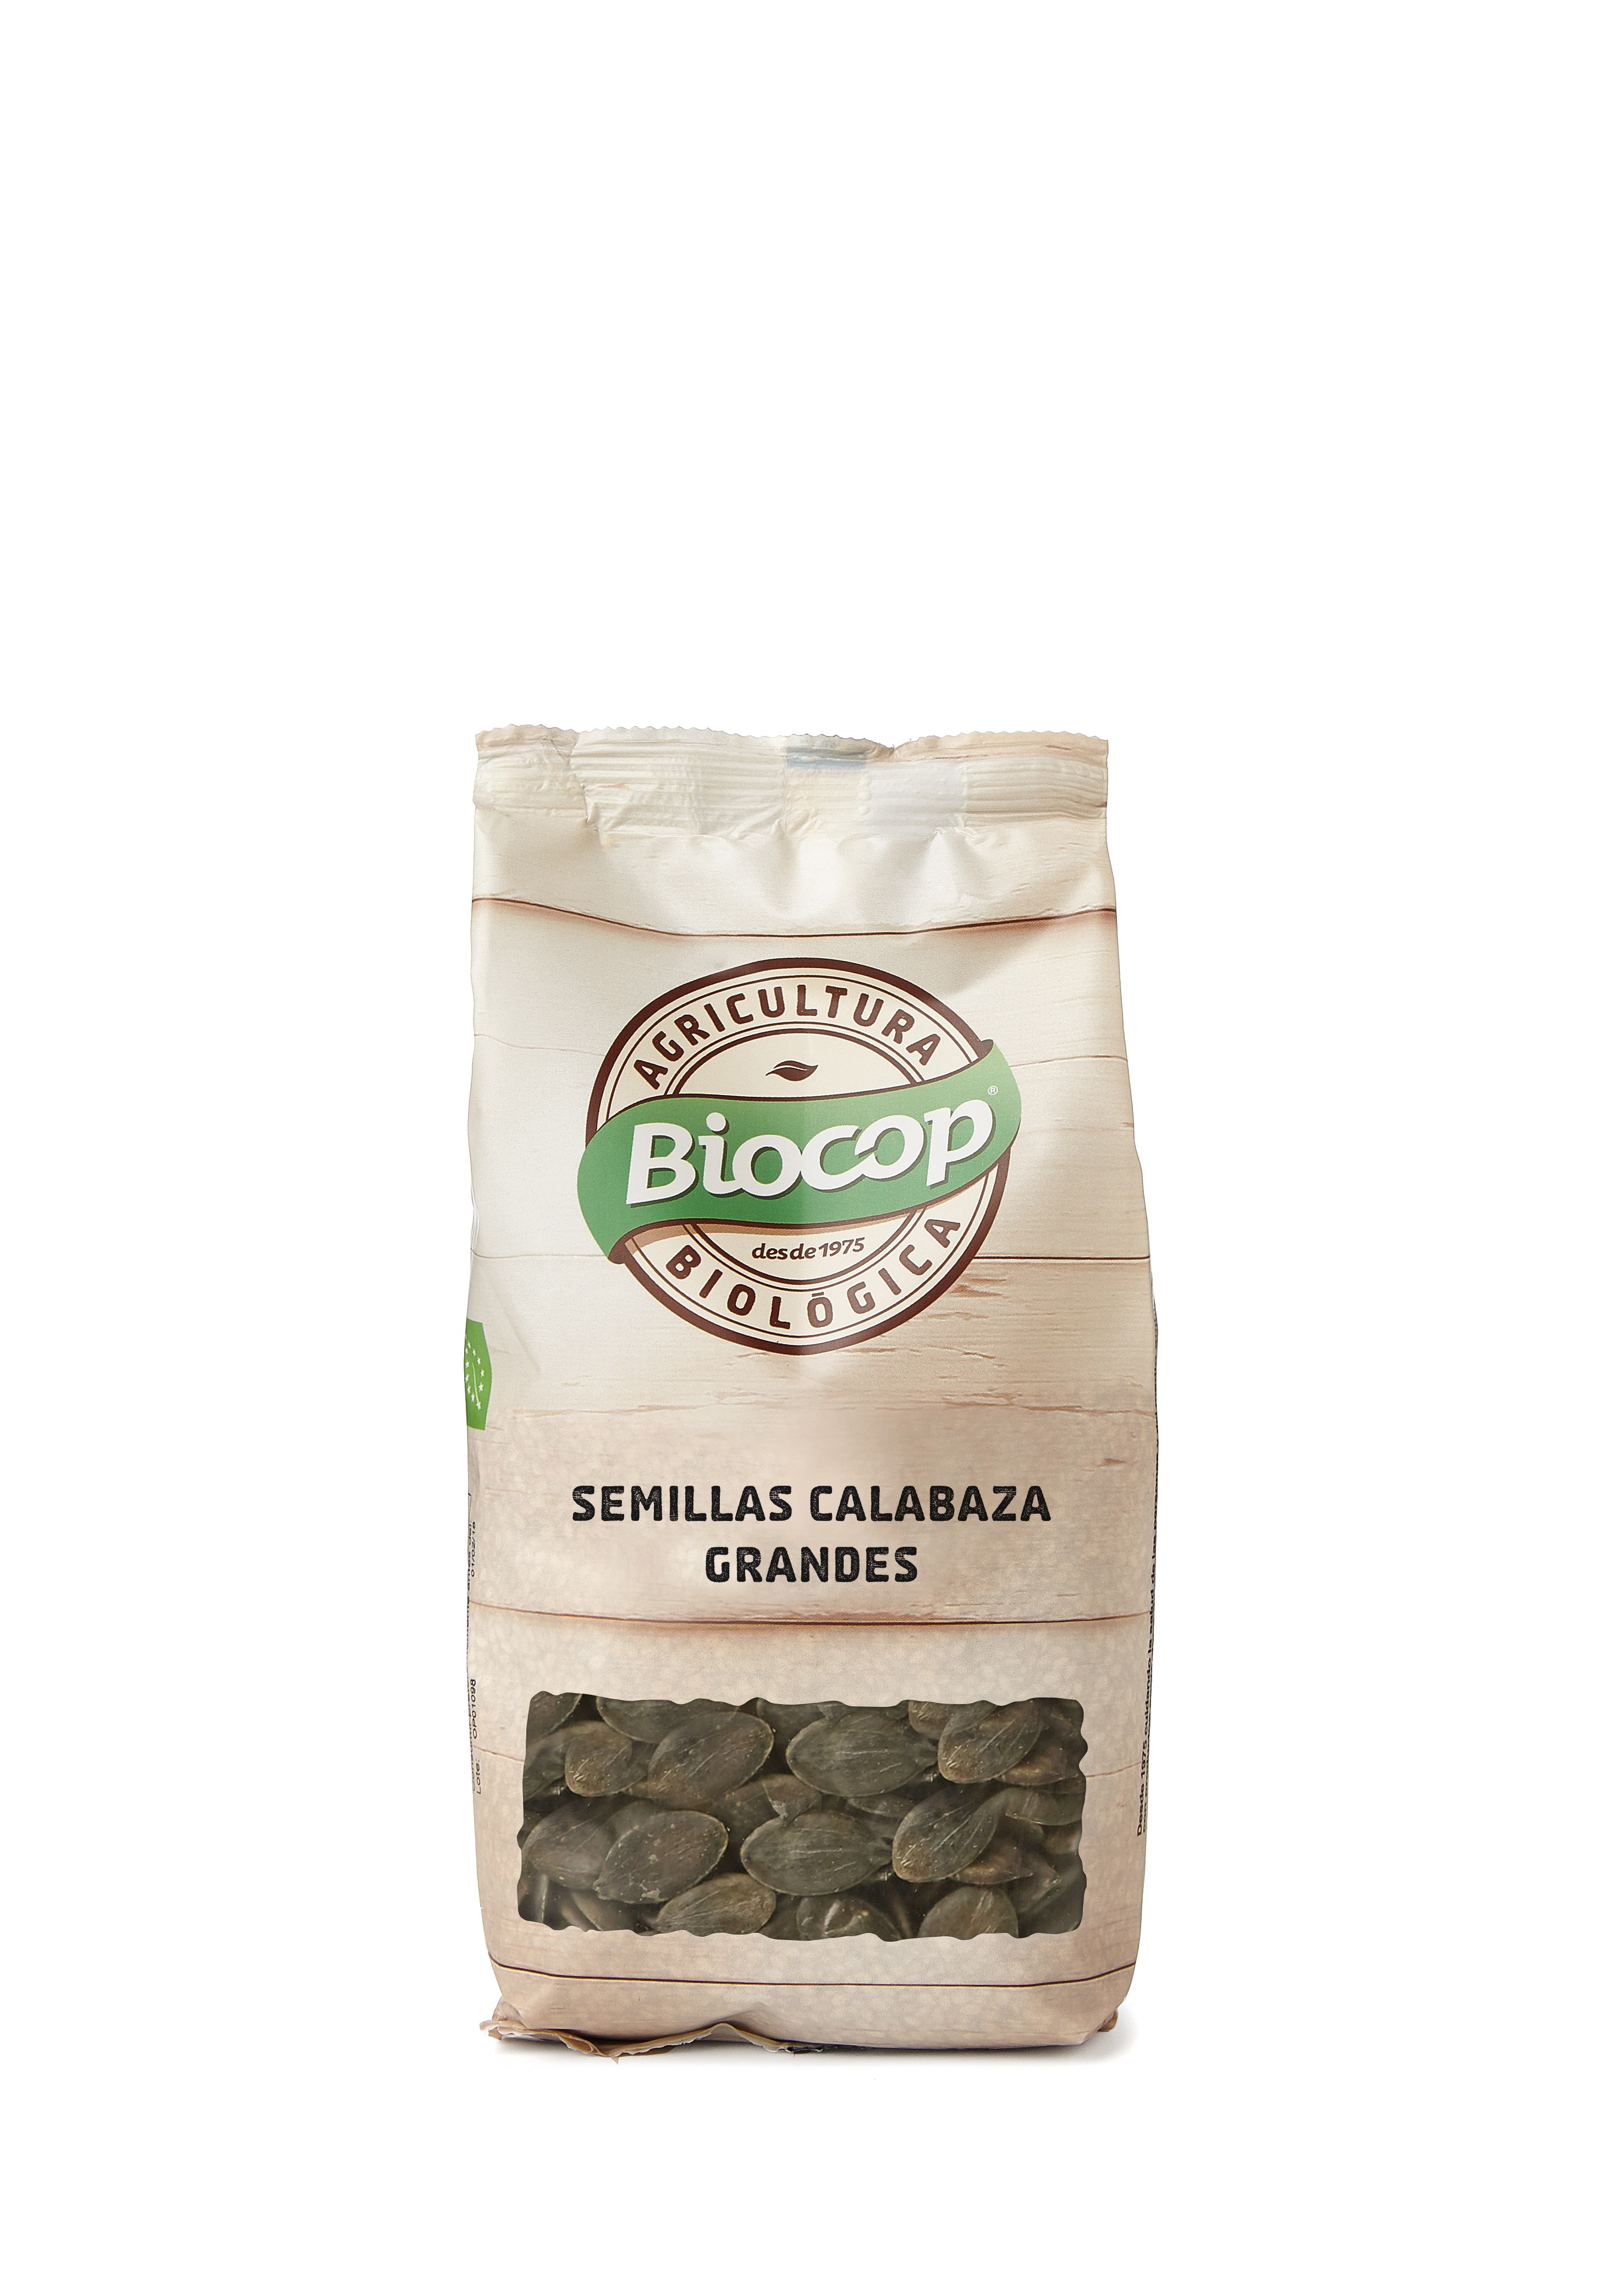 Semillas de calabaza Biocop 250 g